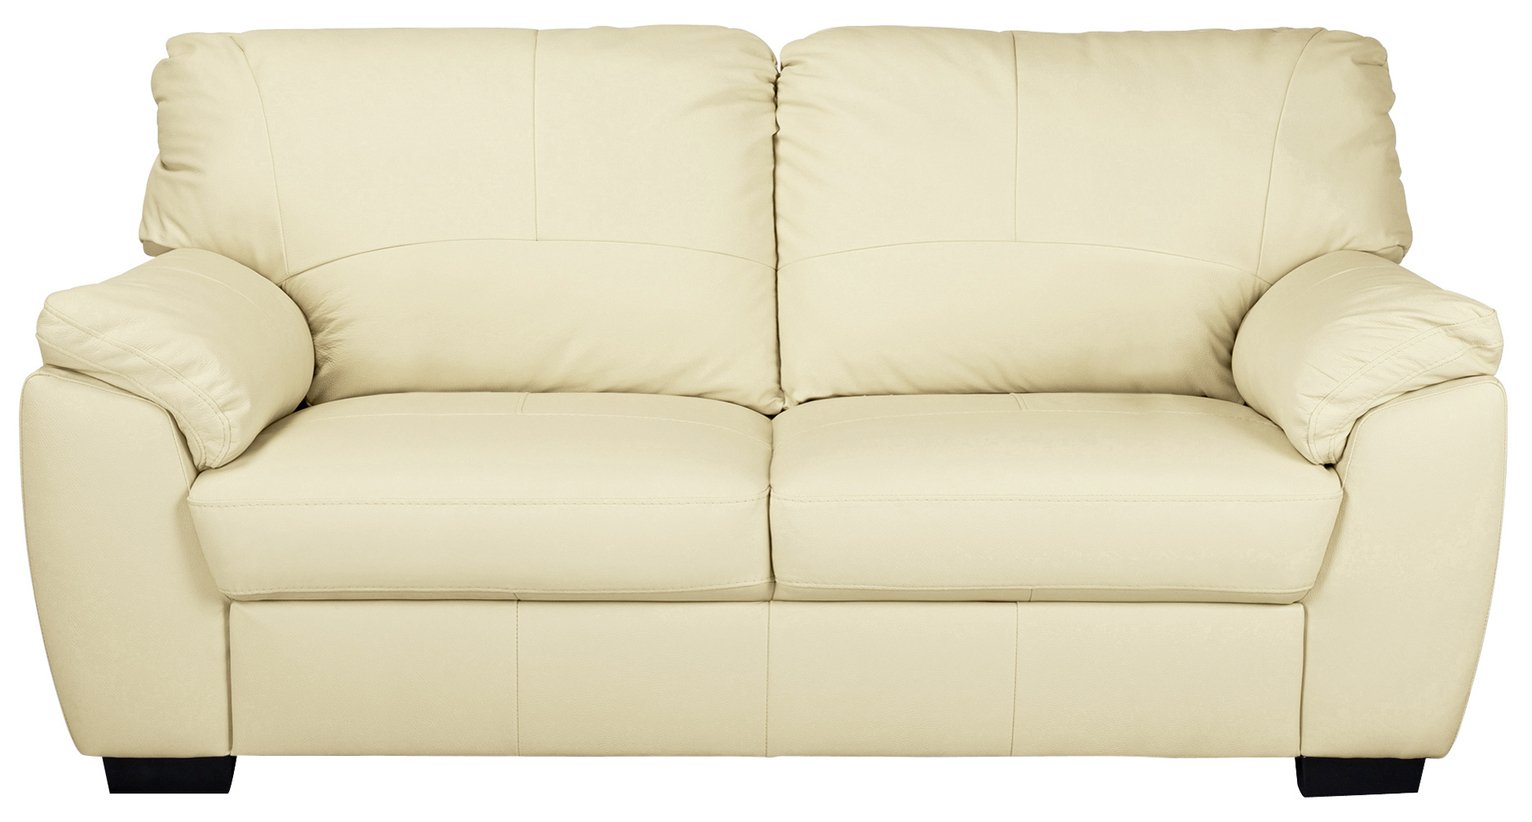 Argos Home Milano Leather 3 Seater Sofa - Ivory